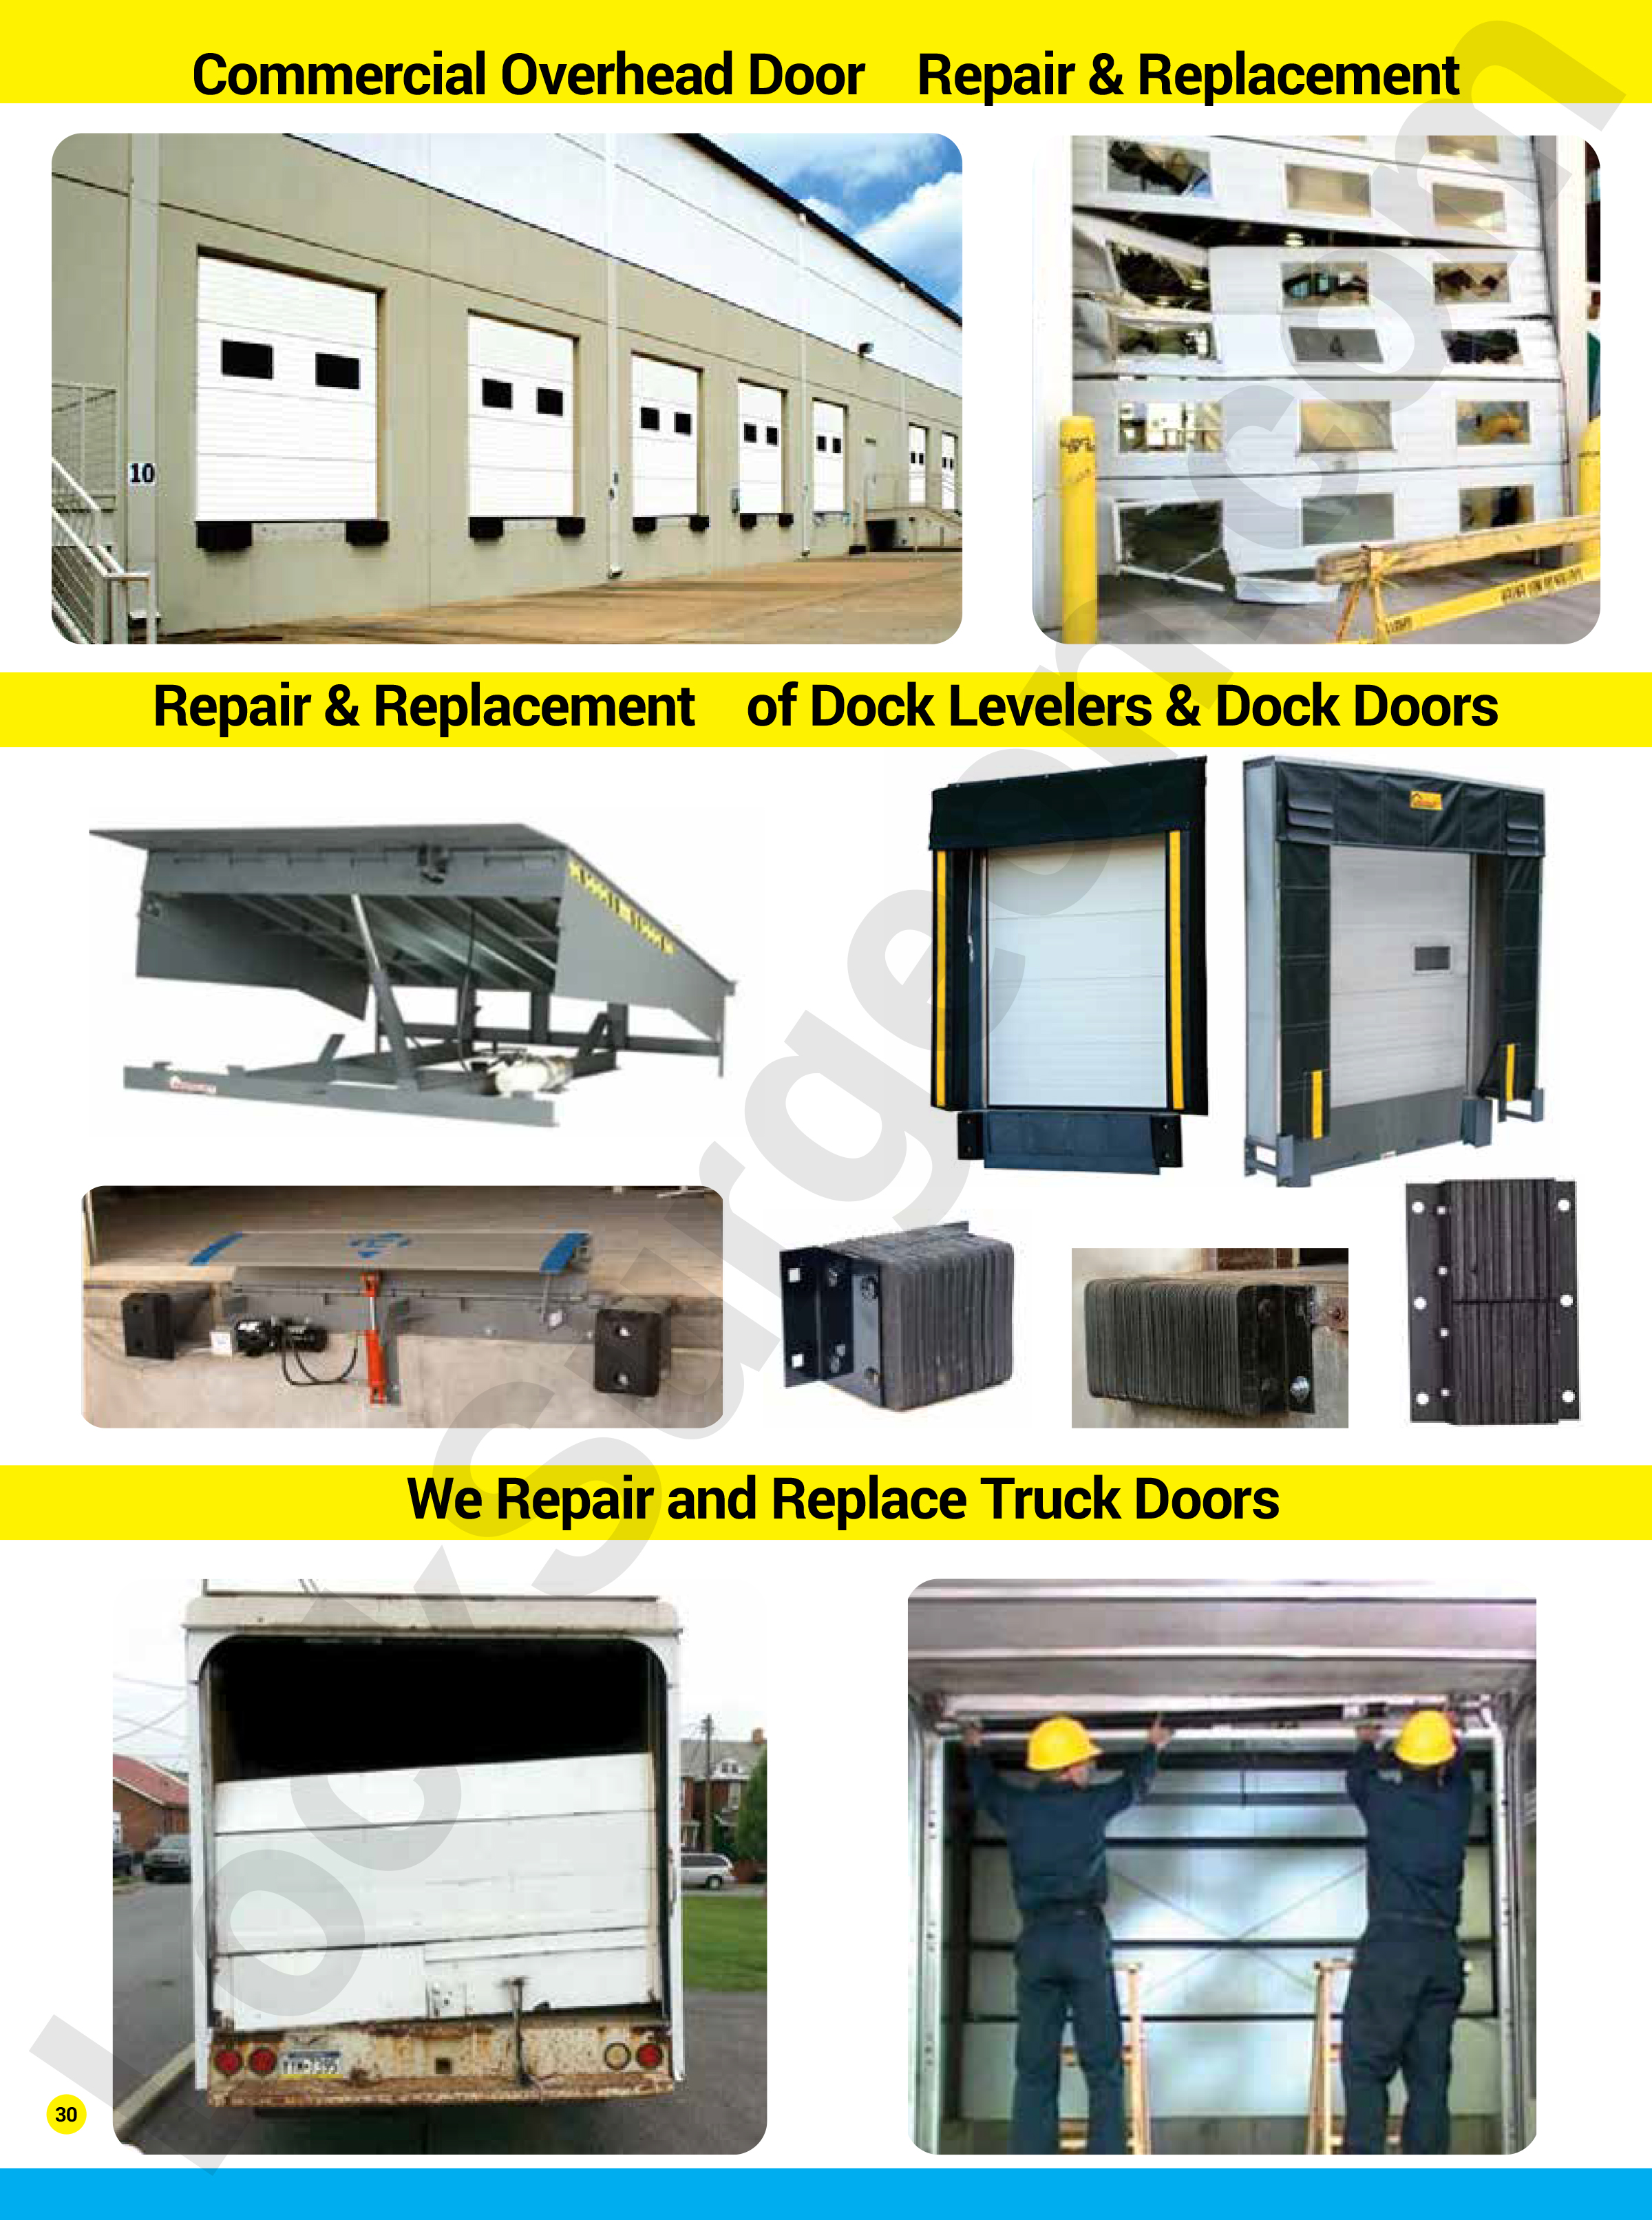 Commercial Overhead Door Loading Dock Leveler Truck Roll-up Door Repair or Replacement Lock Surgeon.